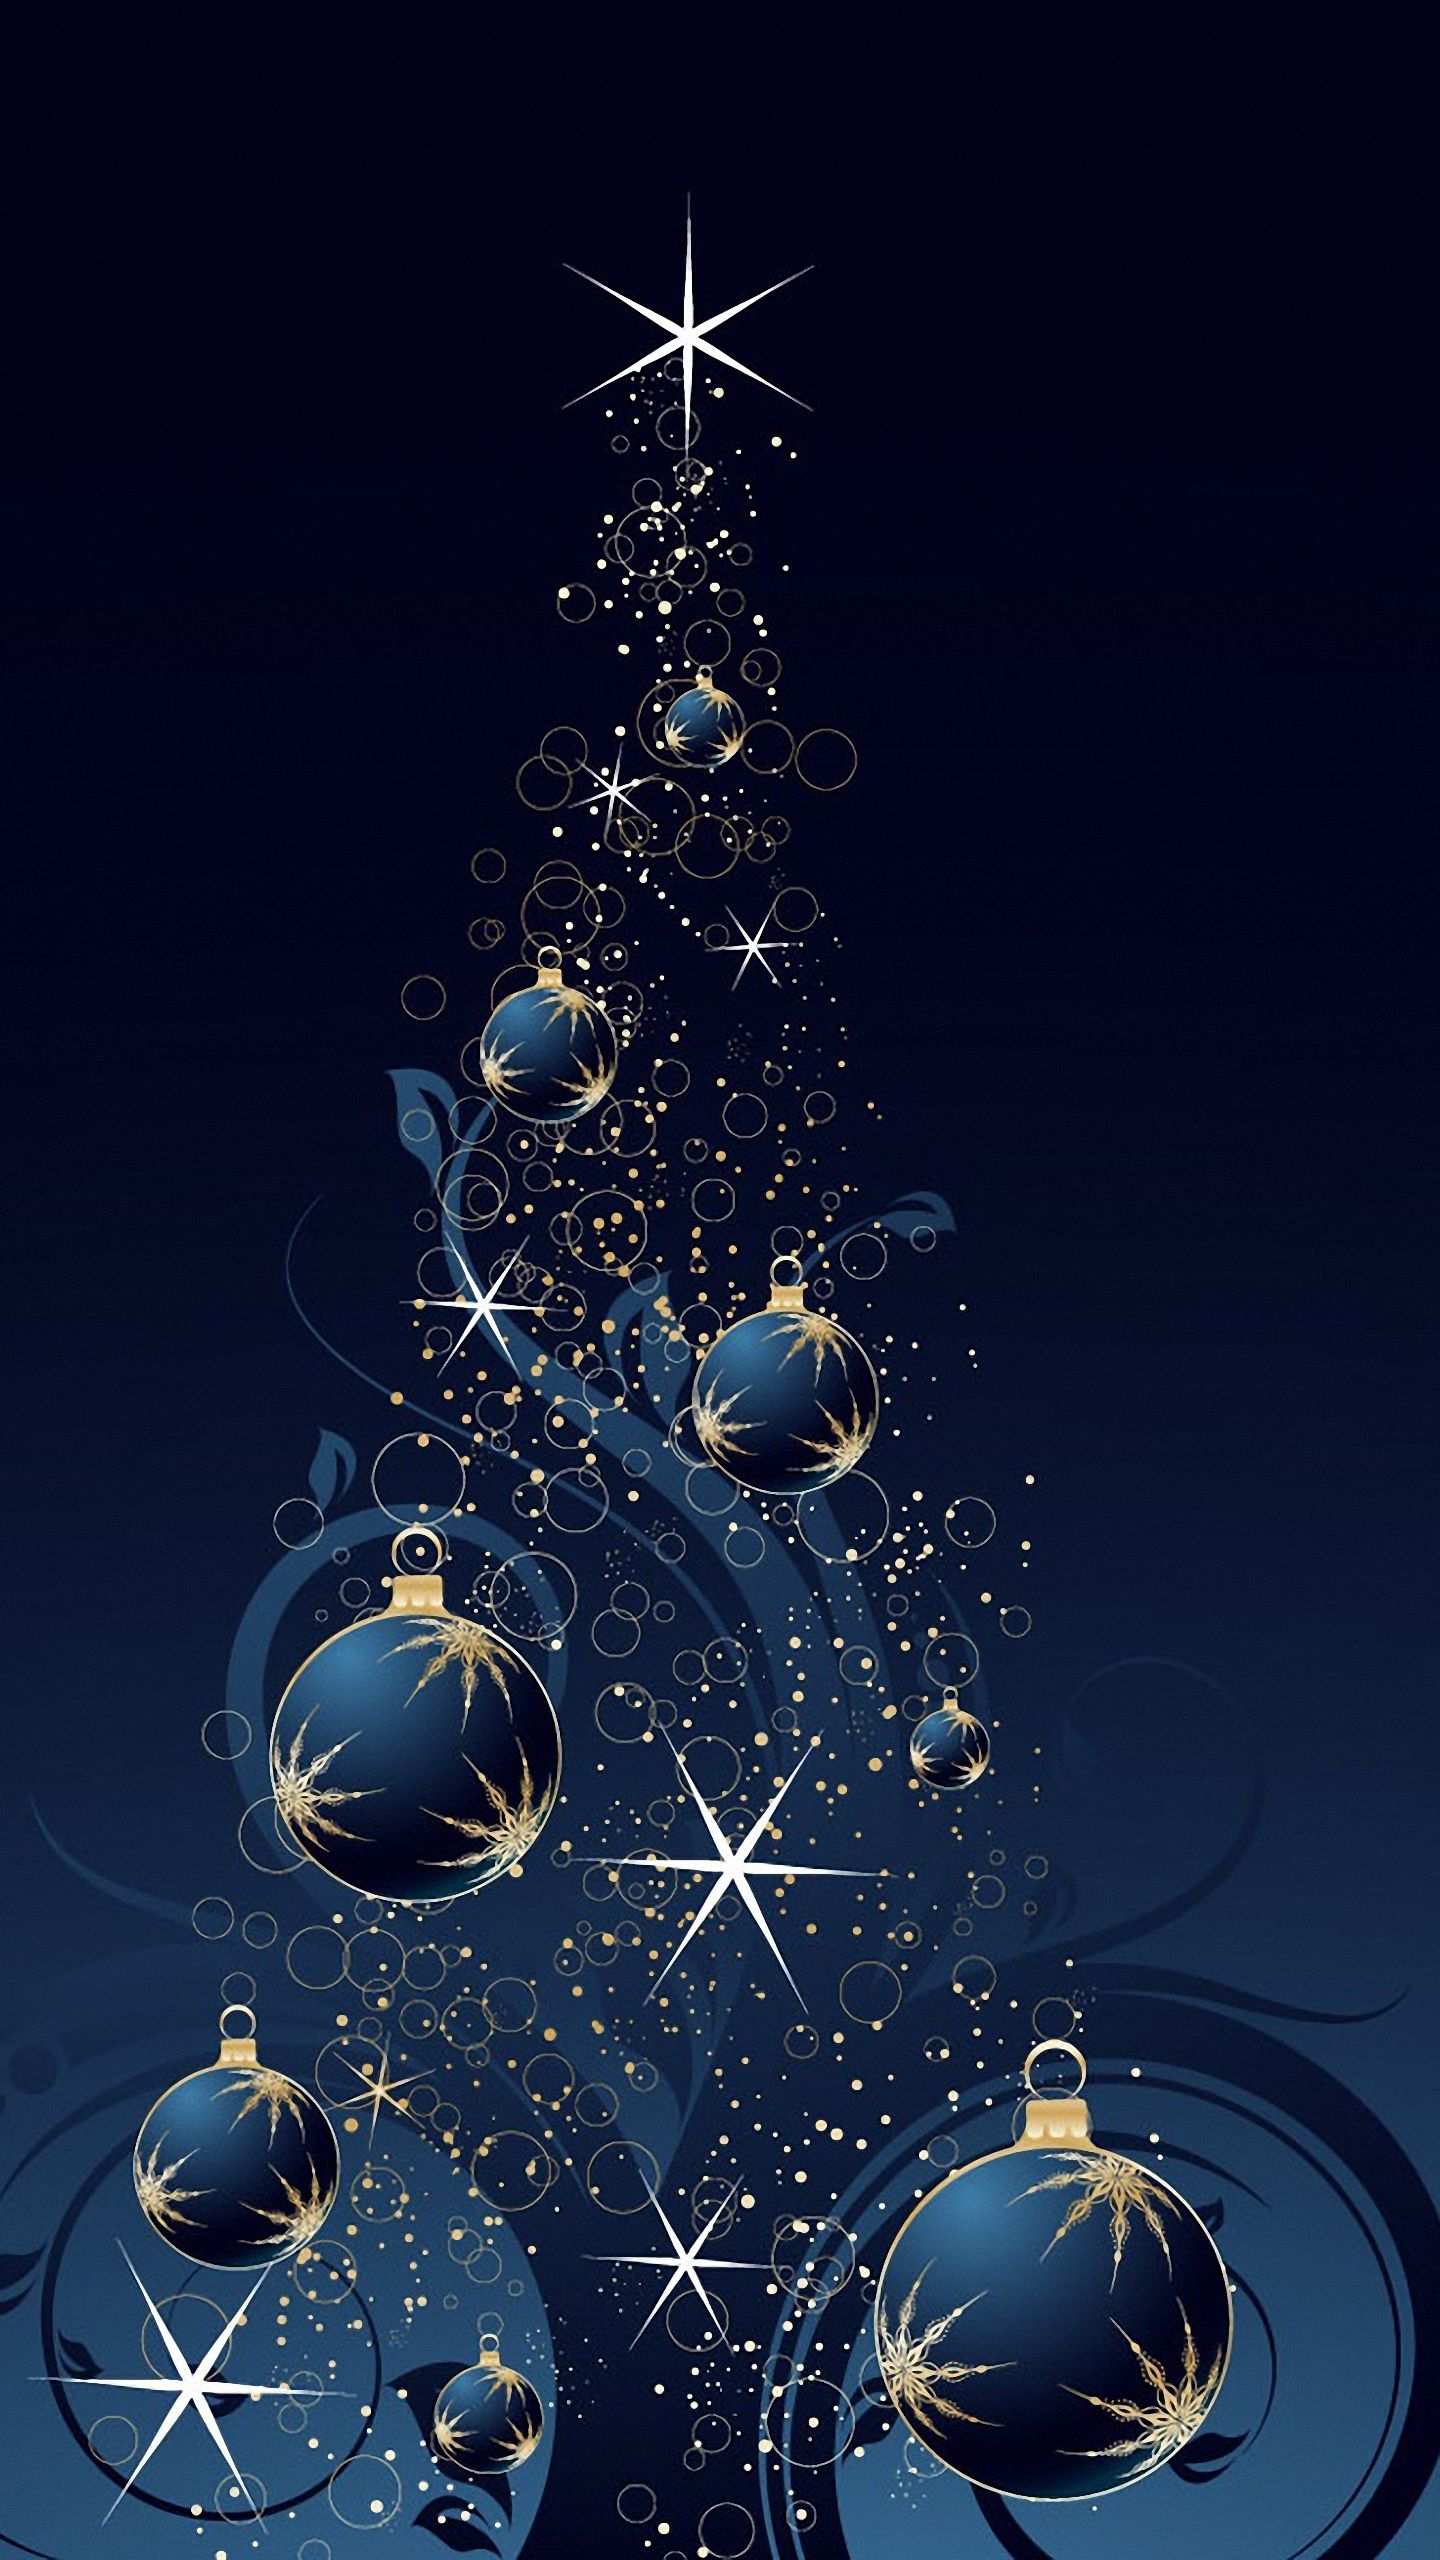 クリスマスの電話の壁紙,クリスマスツリー,青い,クリスマスオーナメント,クリスマスの飾り,空